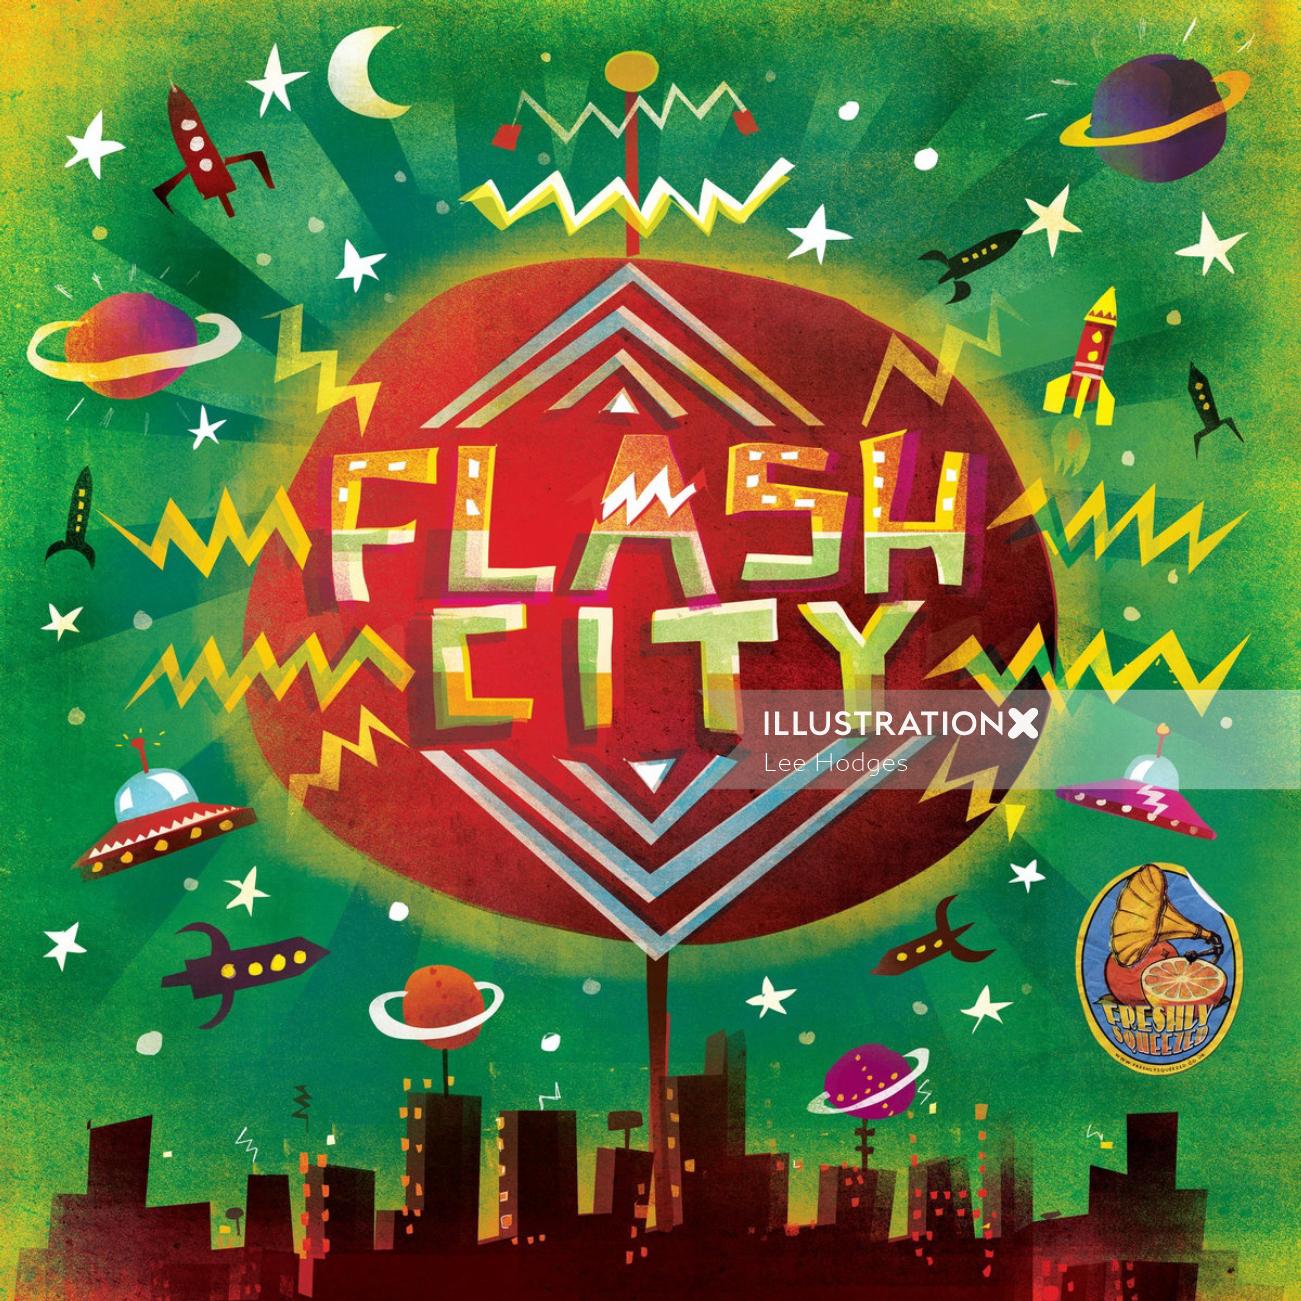 Shaka flash city animation